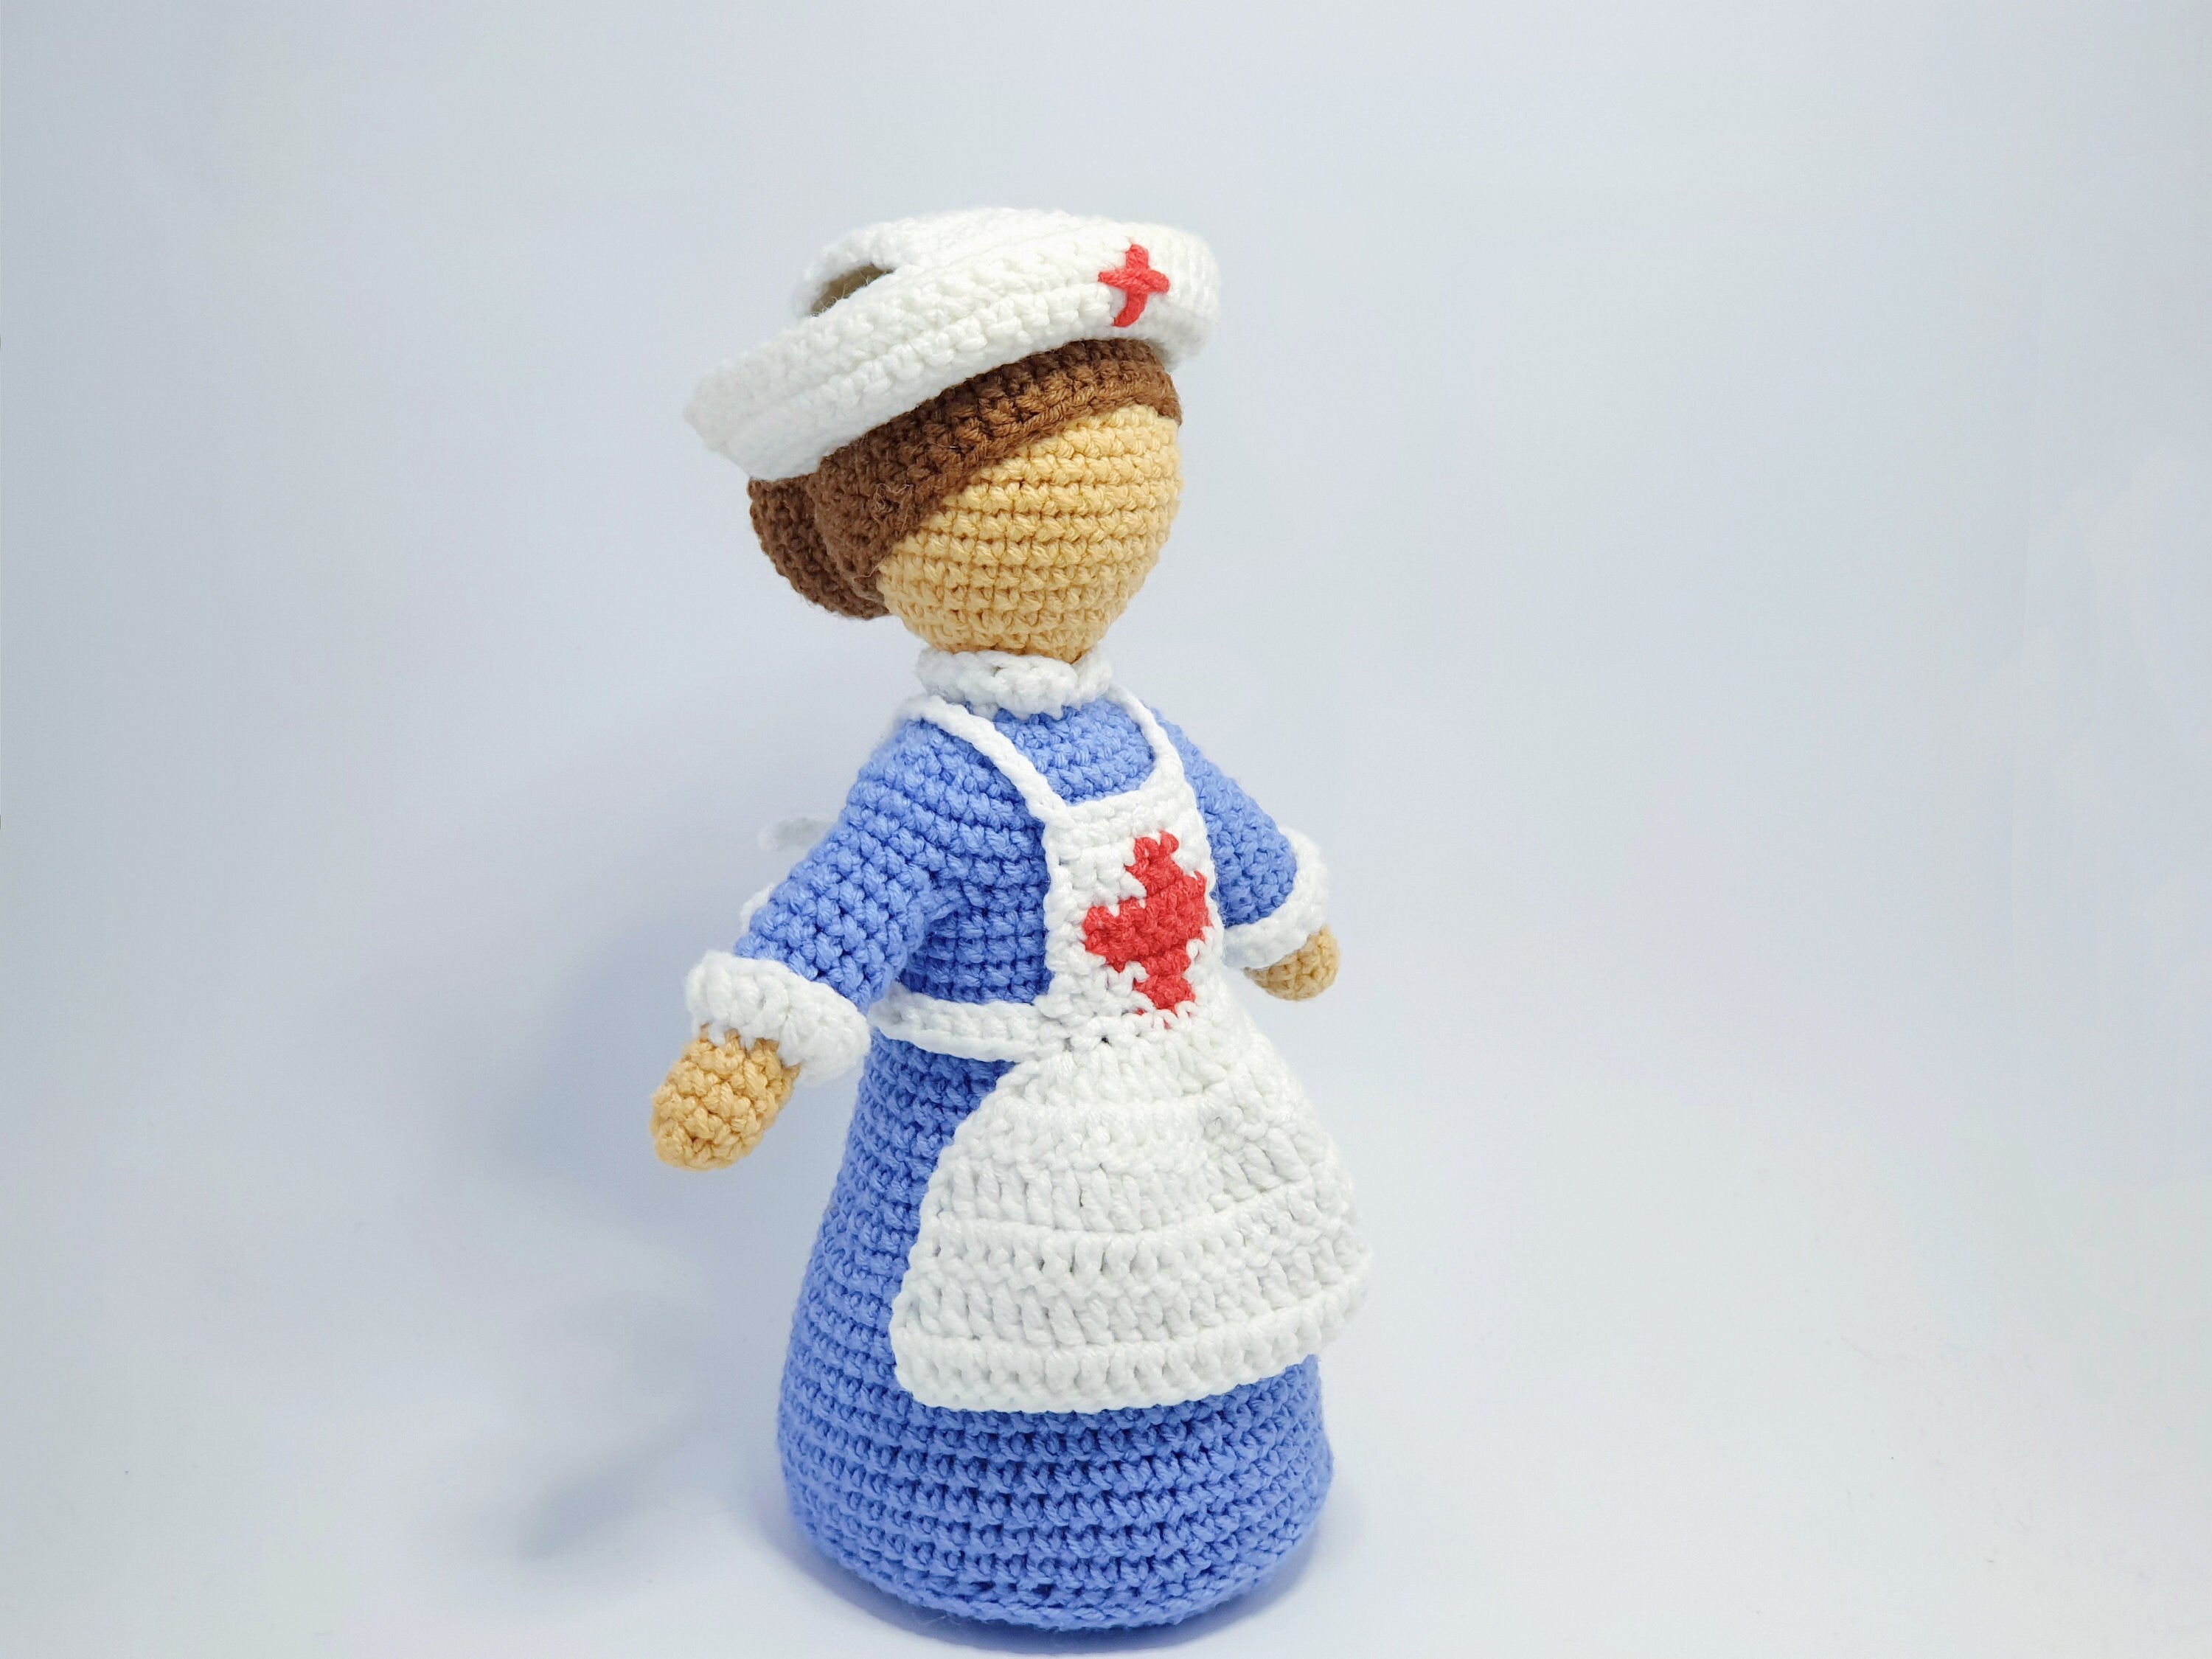 Схеми в'язання гачком амігурумі лялька медсестра PDF / Instant Download tutorial